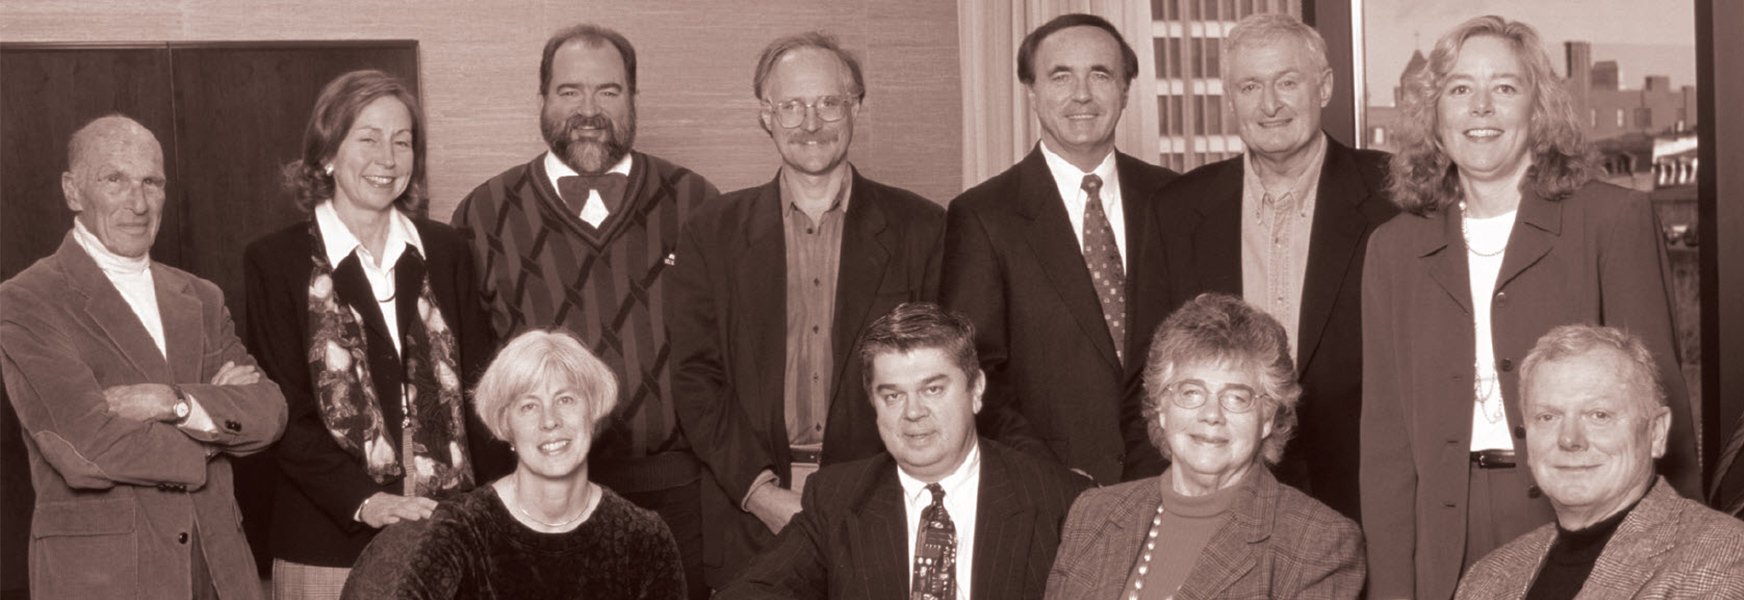 MEMIC Board of Directors from 1998